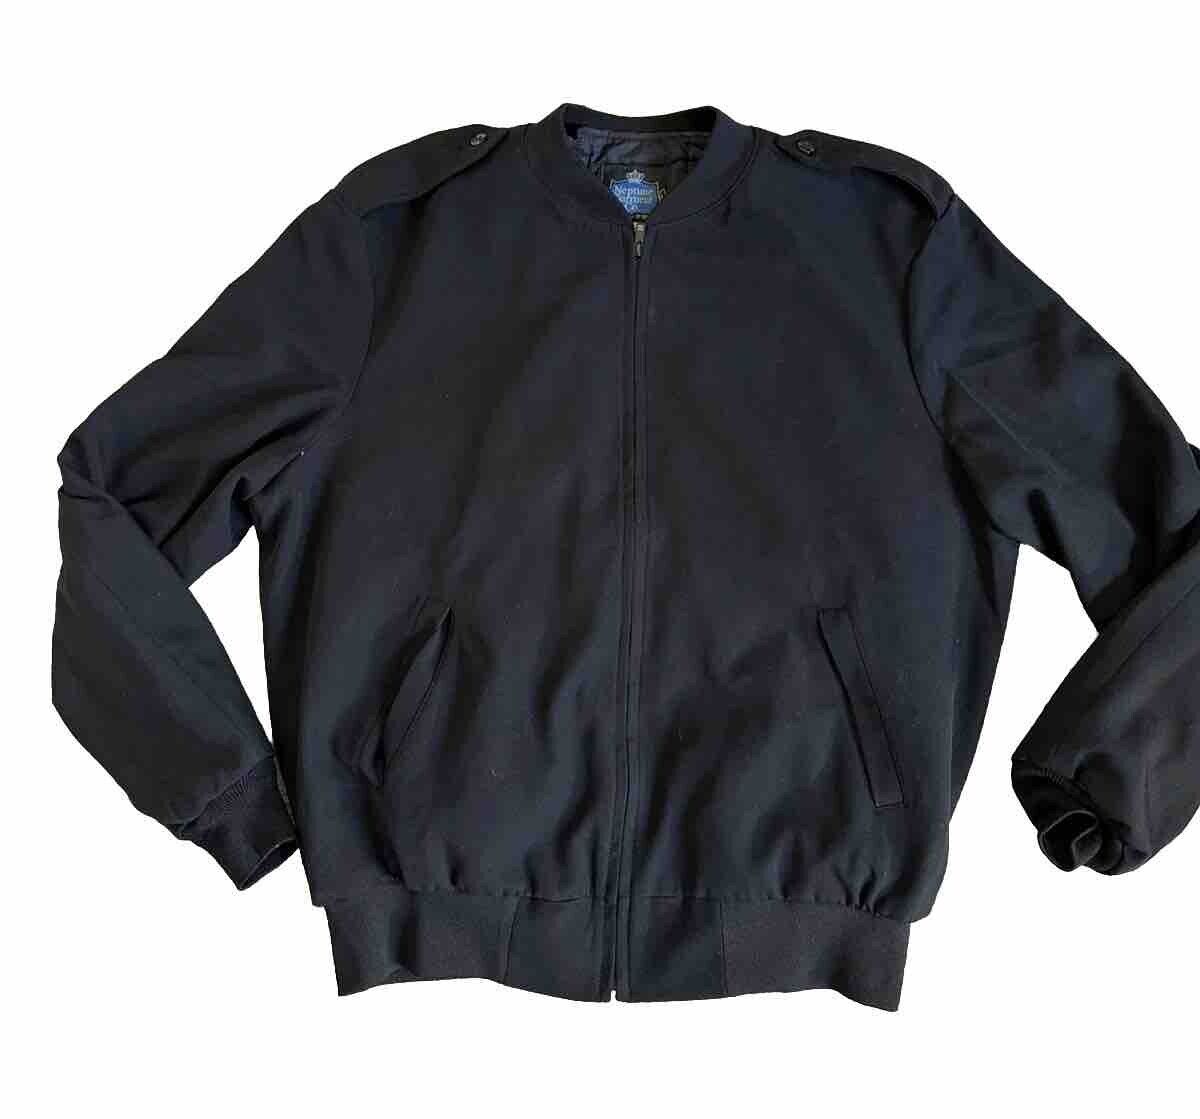 US NAVY Size 46 Reg Men\'s Officer Neptune Garment Co. Jacket, Black w/Thinsulate